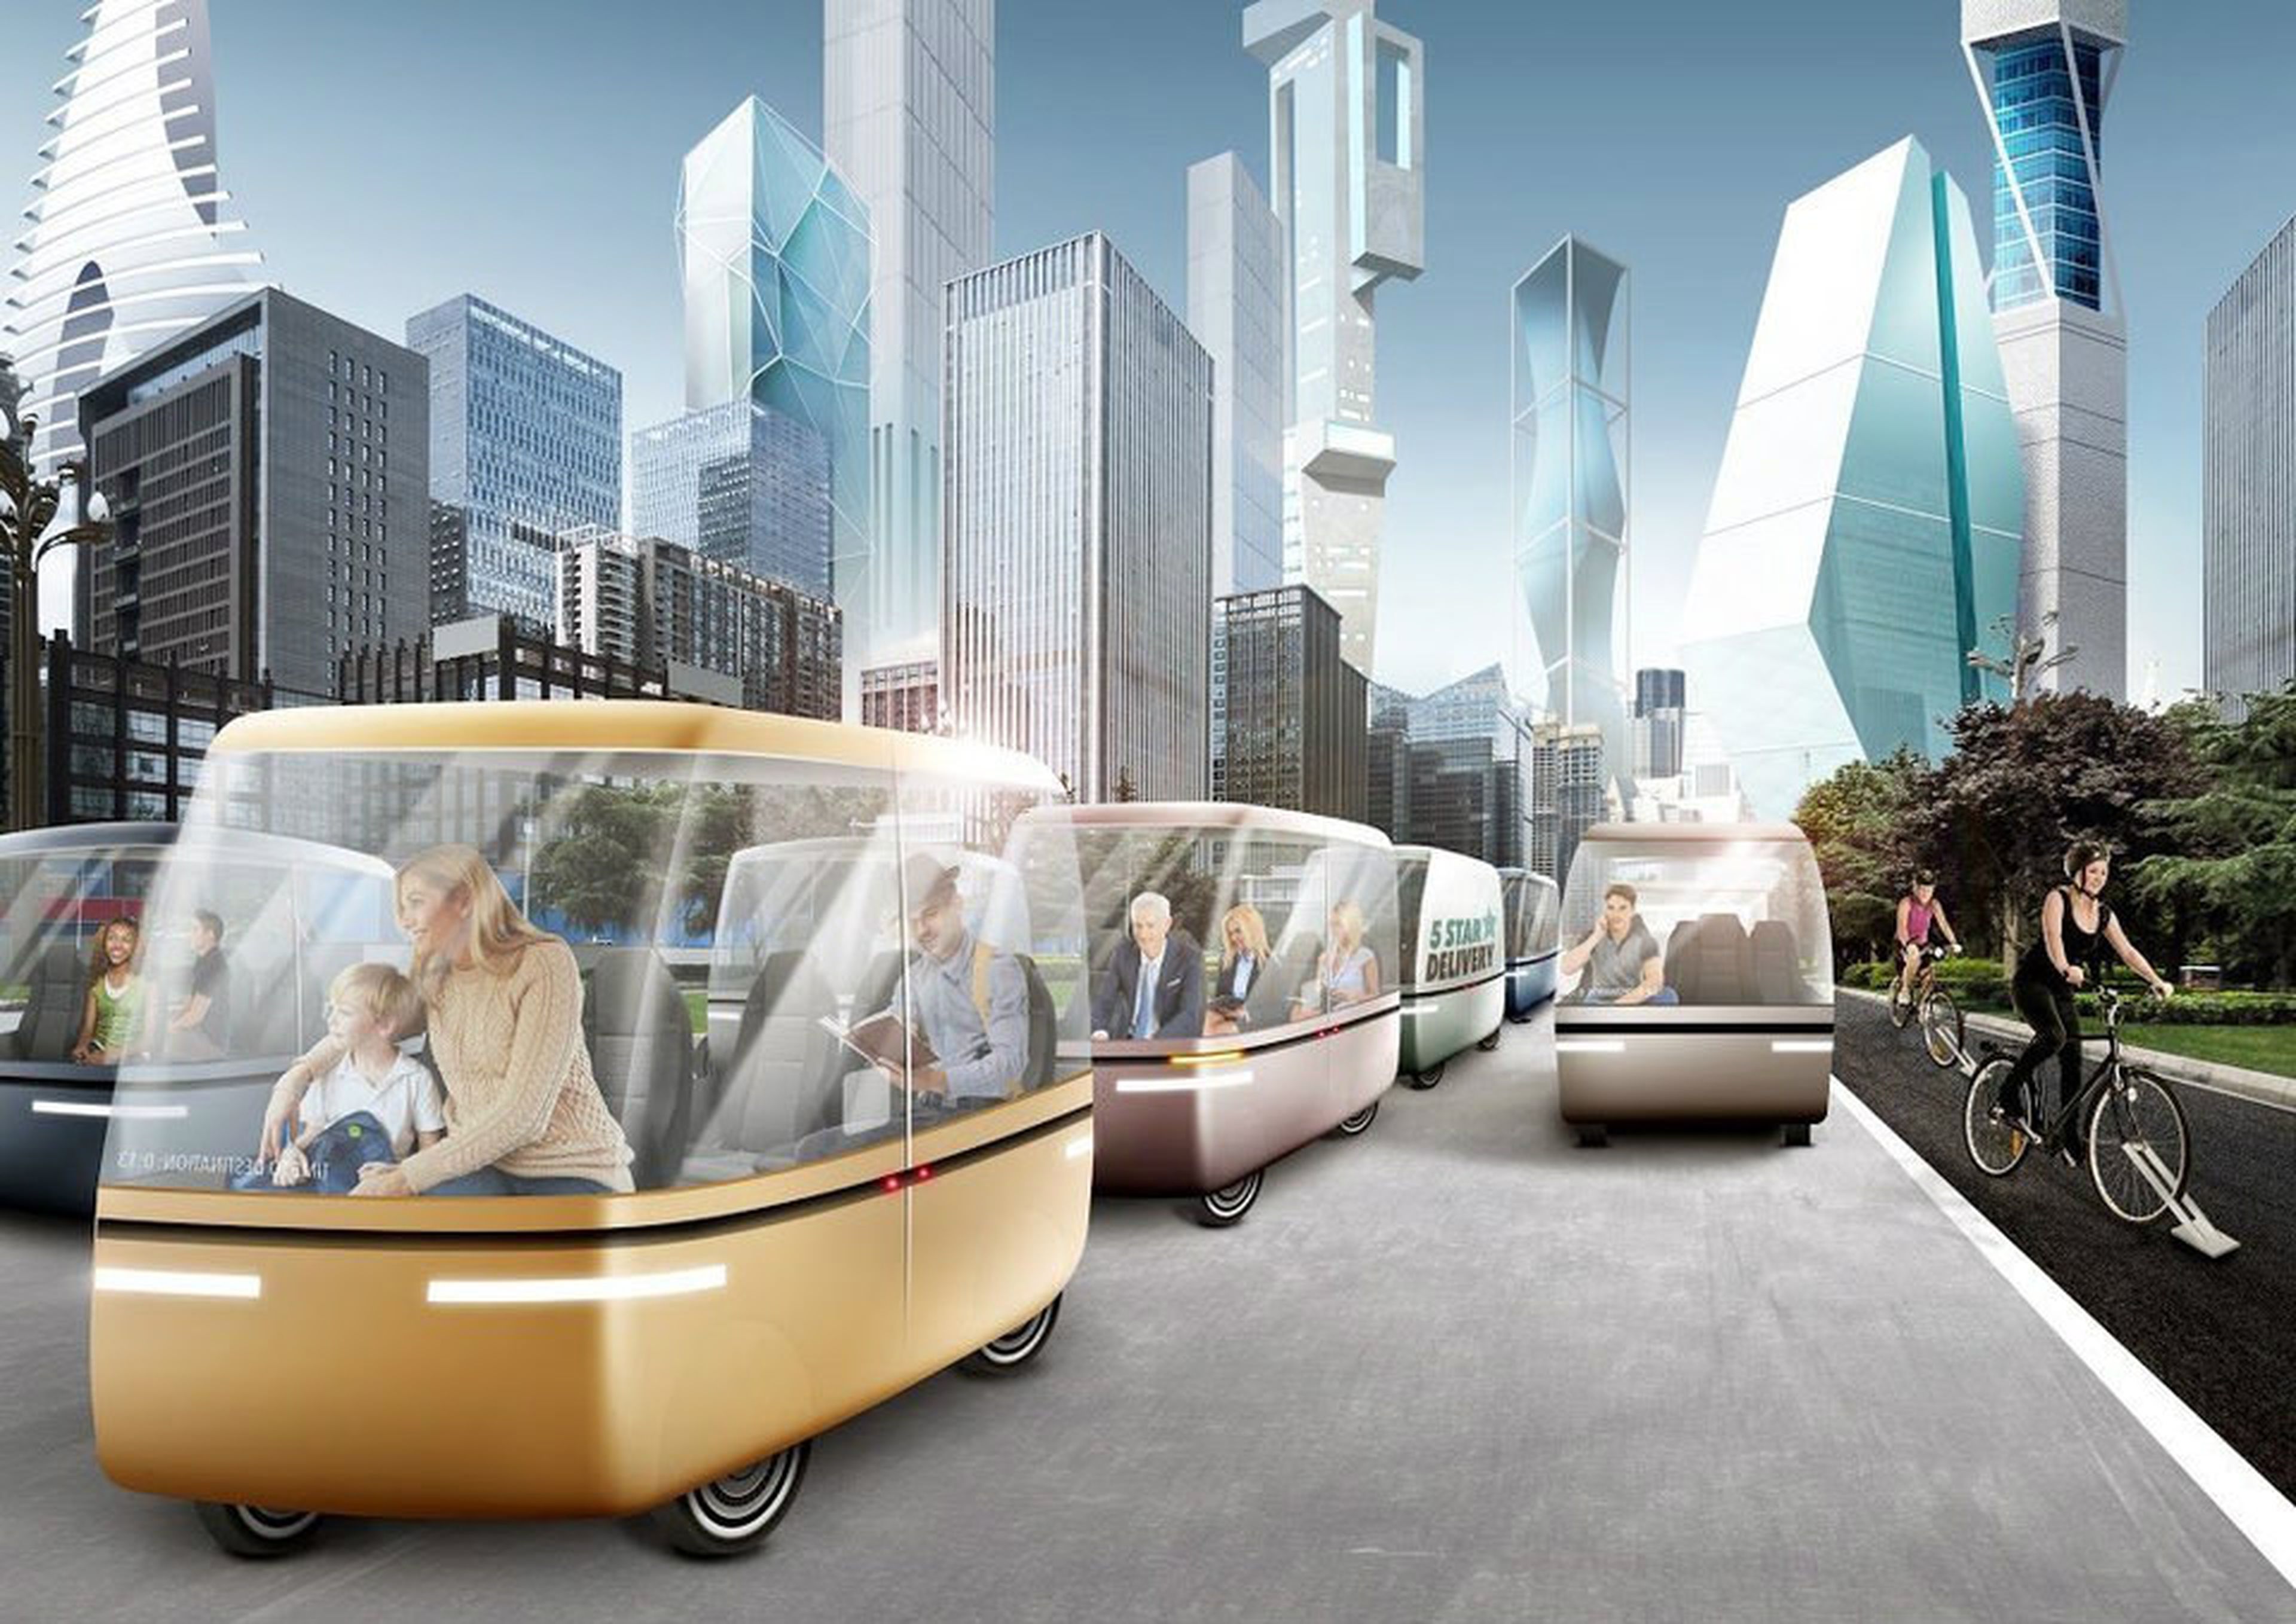 Технологии через 100 лет. Транспорт будущего. Город будущего транспорт. Картинки будущего. Инновации в транспорте.